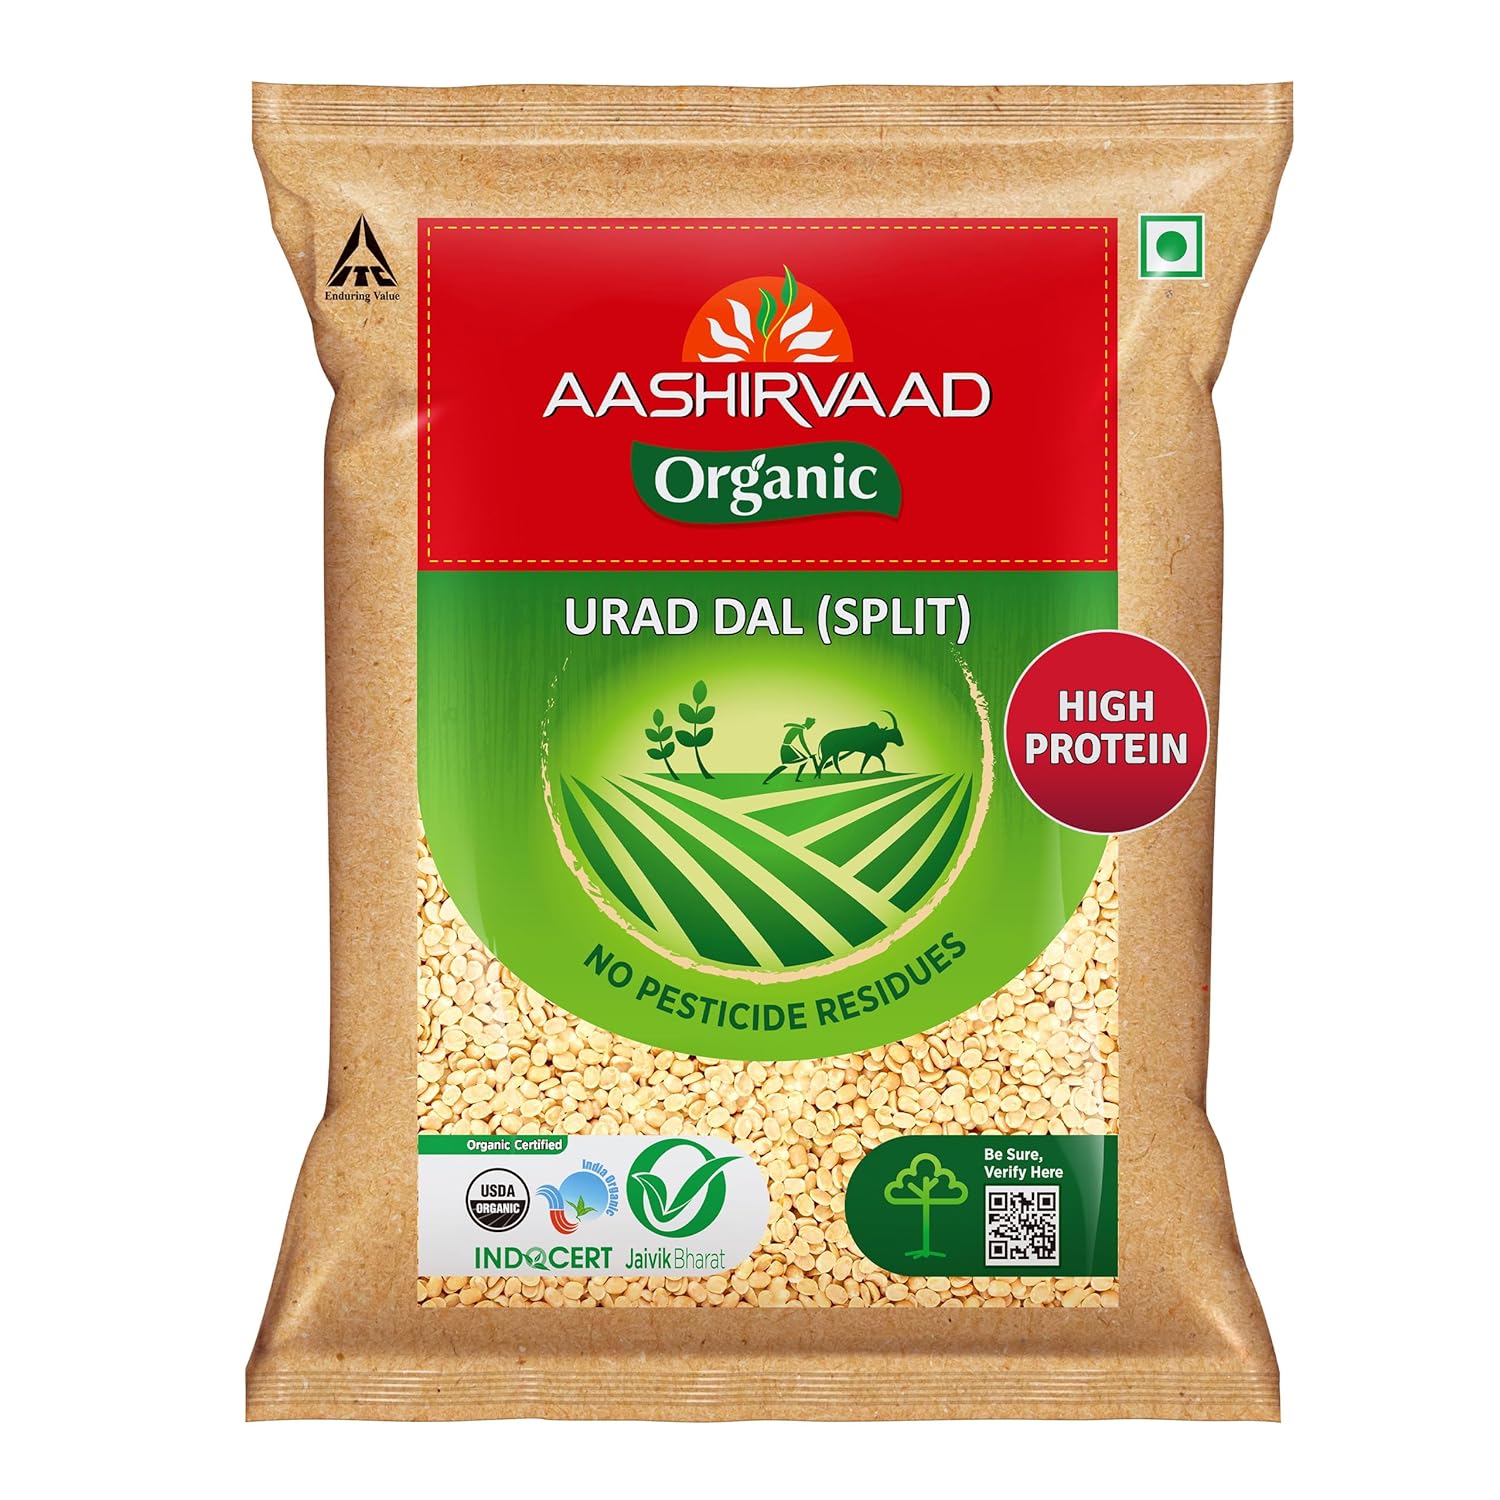 Aashirvaad Organic Urad Dal 500g